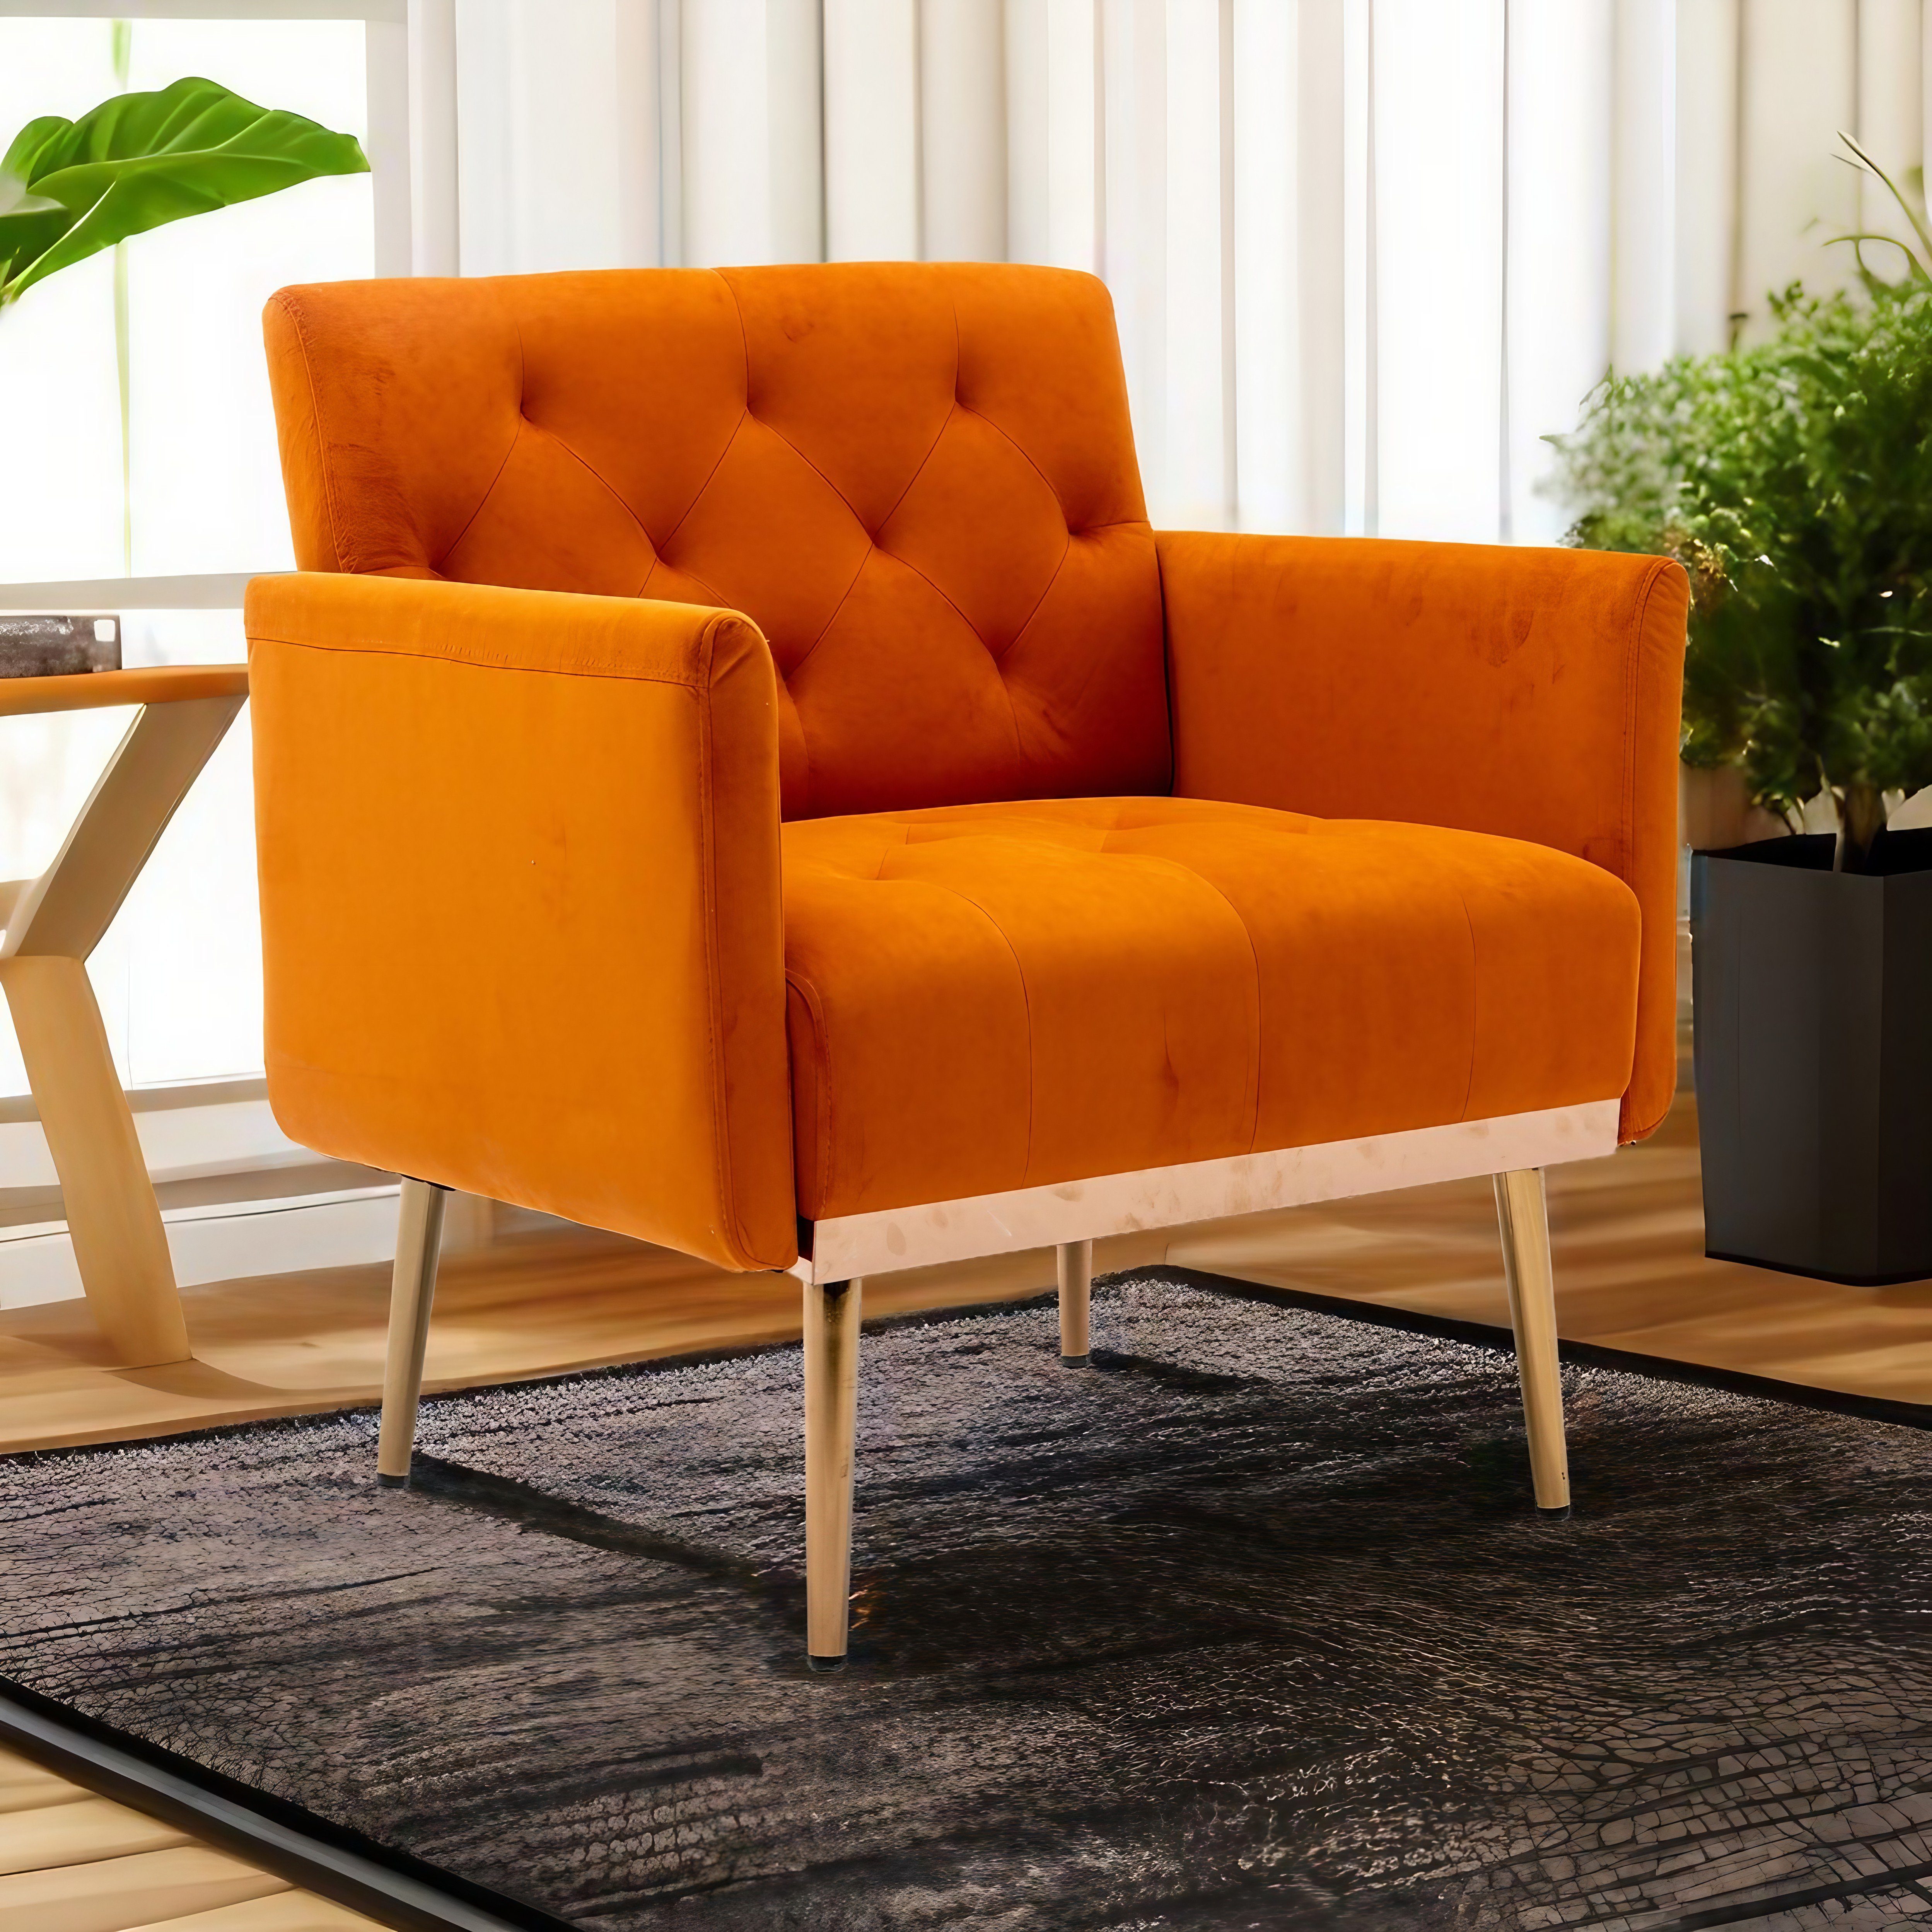 REDOM Esszimmerstuhl Freizeitsessel mit roségoldenen Füßen,Vierbeiniger Stuhl, Akzentstuhl orange